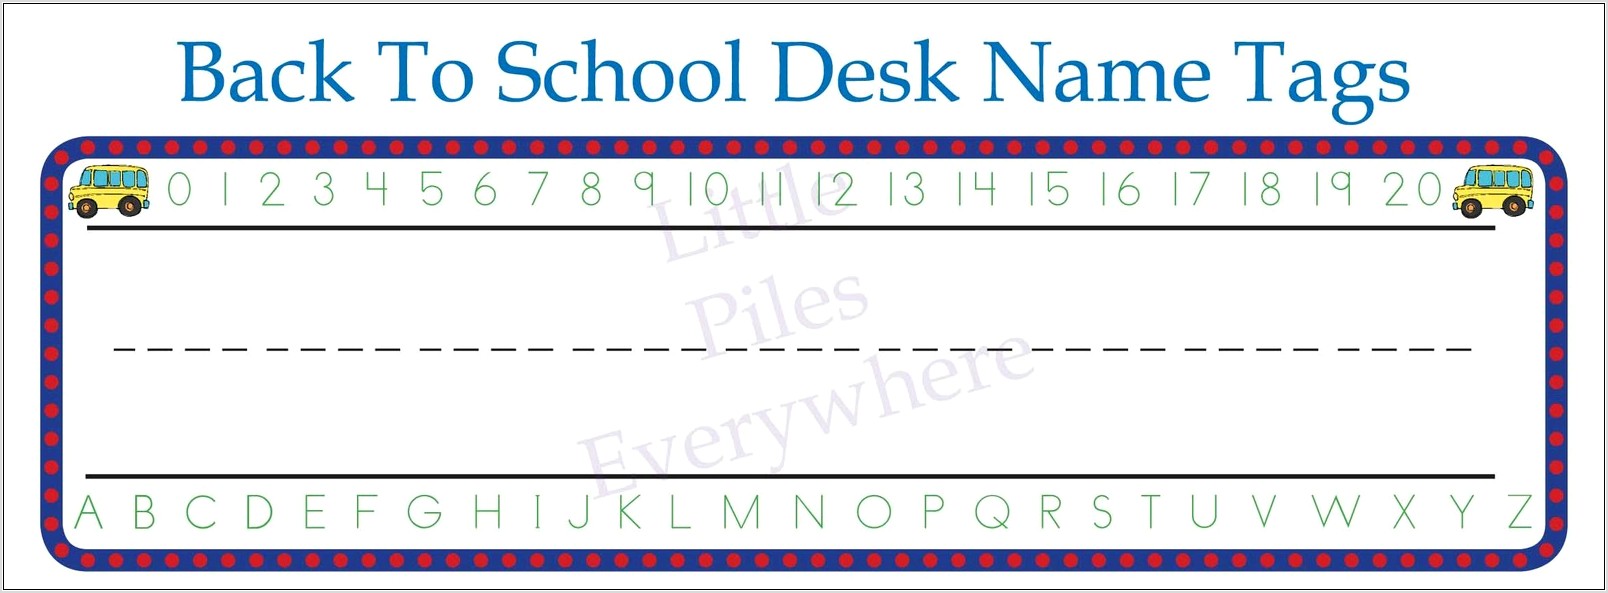 Printable School Name Tags For Desks